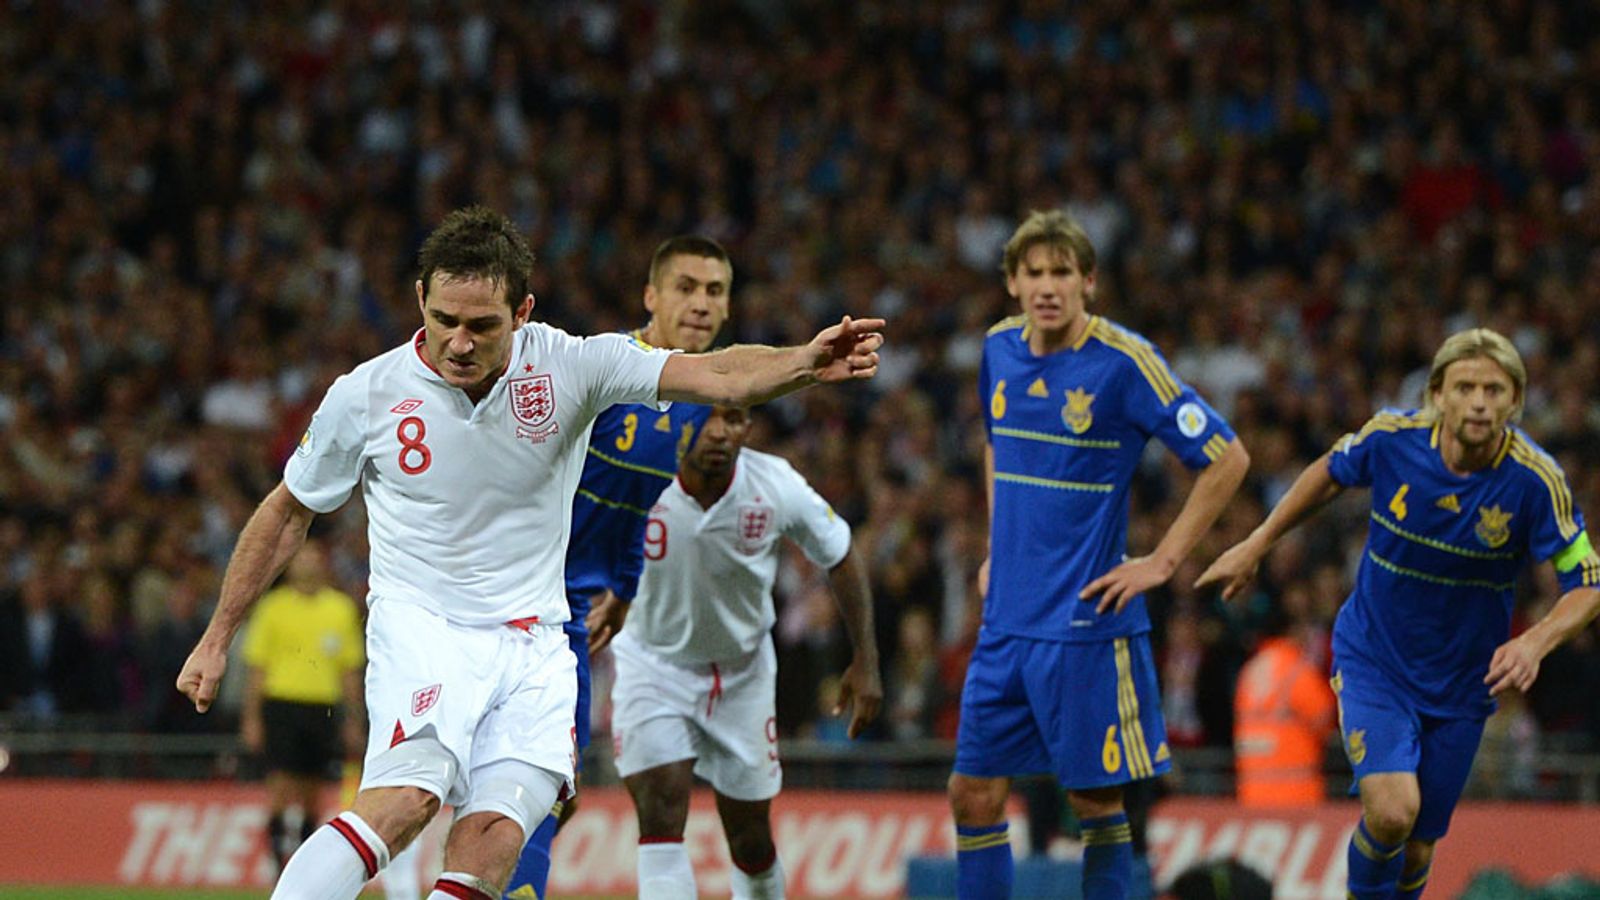 England 1 - 1 Ukraine - Match Report & Highlights